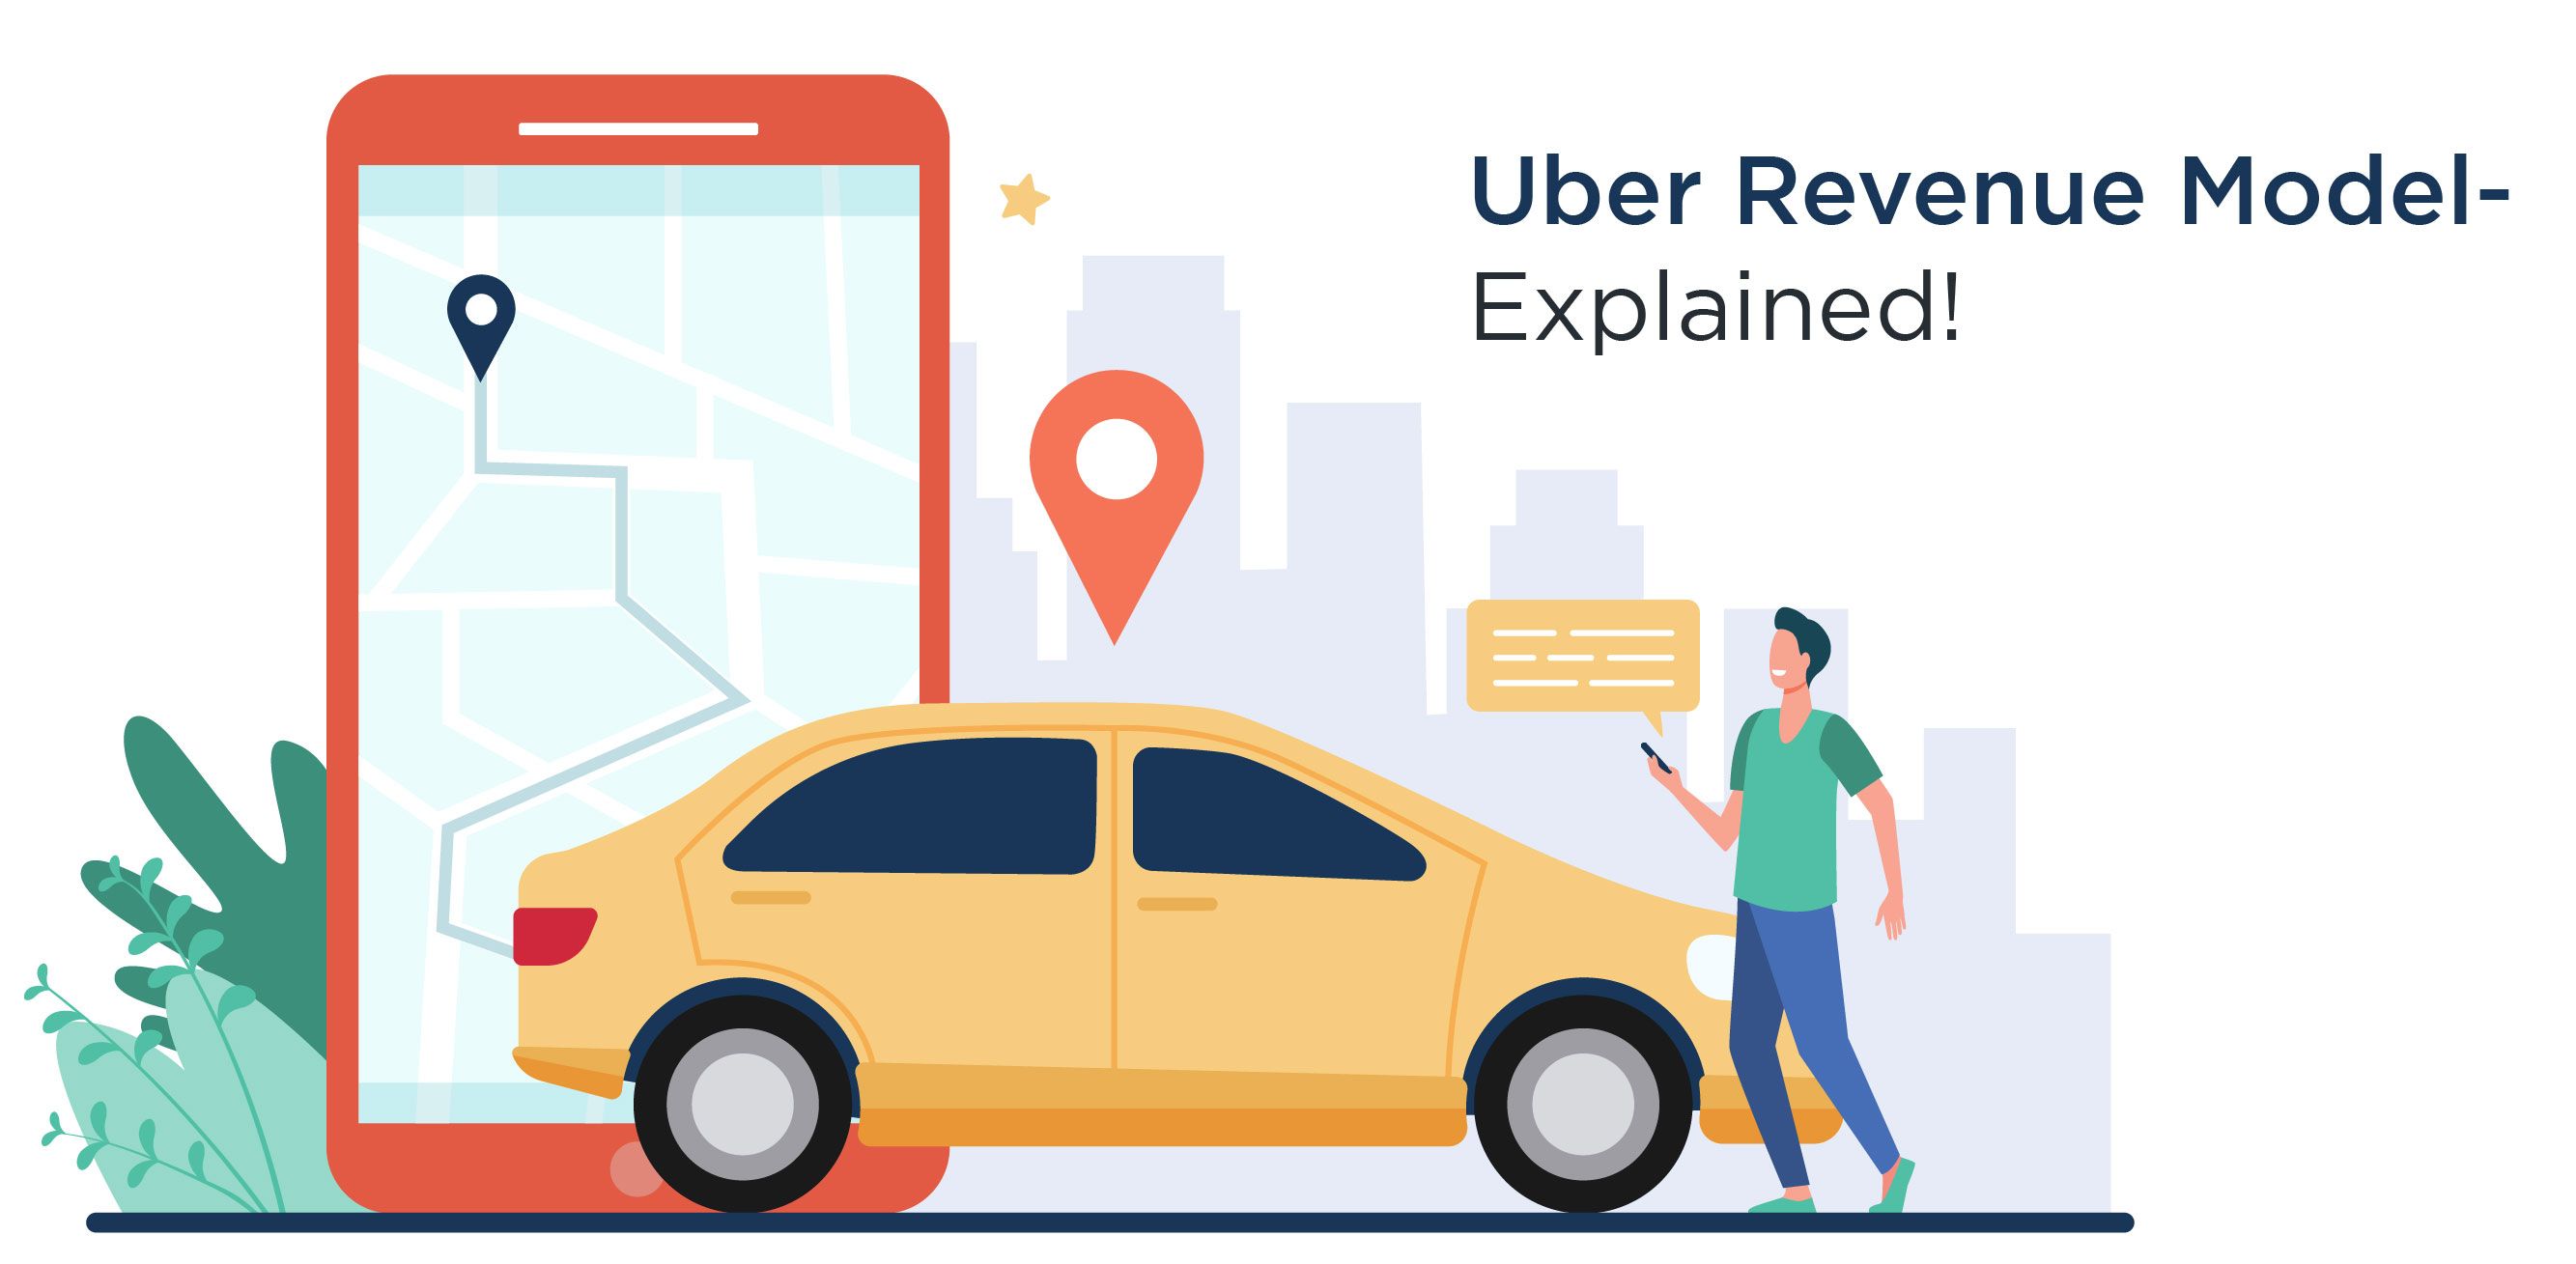 Uber Revenue Model- Explained!